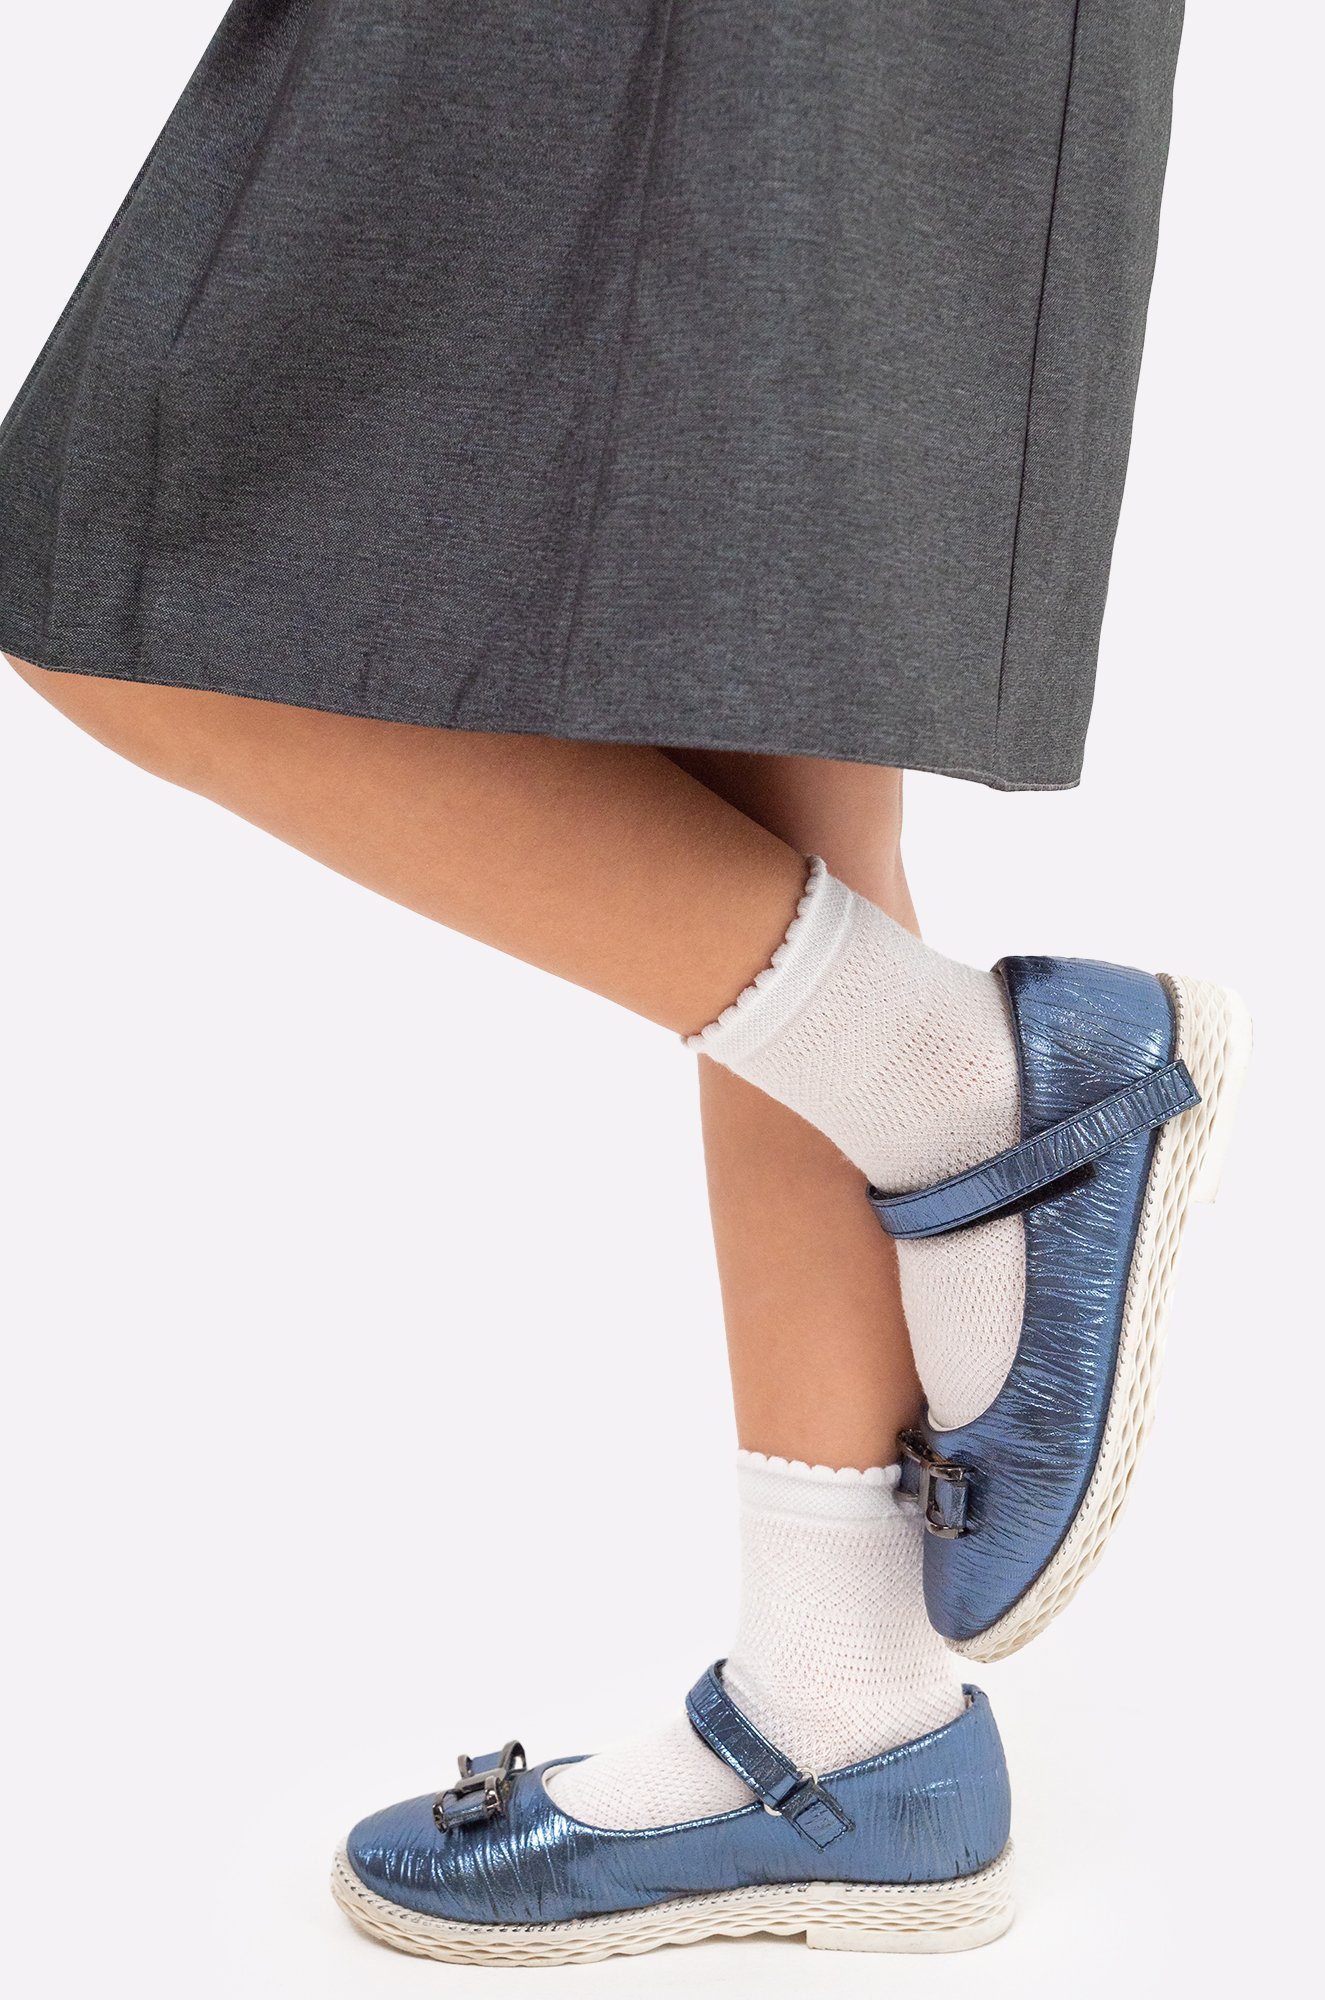 Ажурные носки для девочки Happy Fox